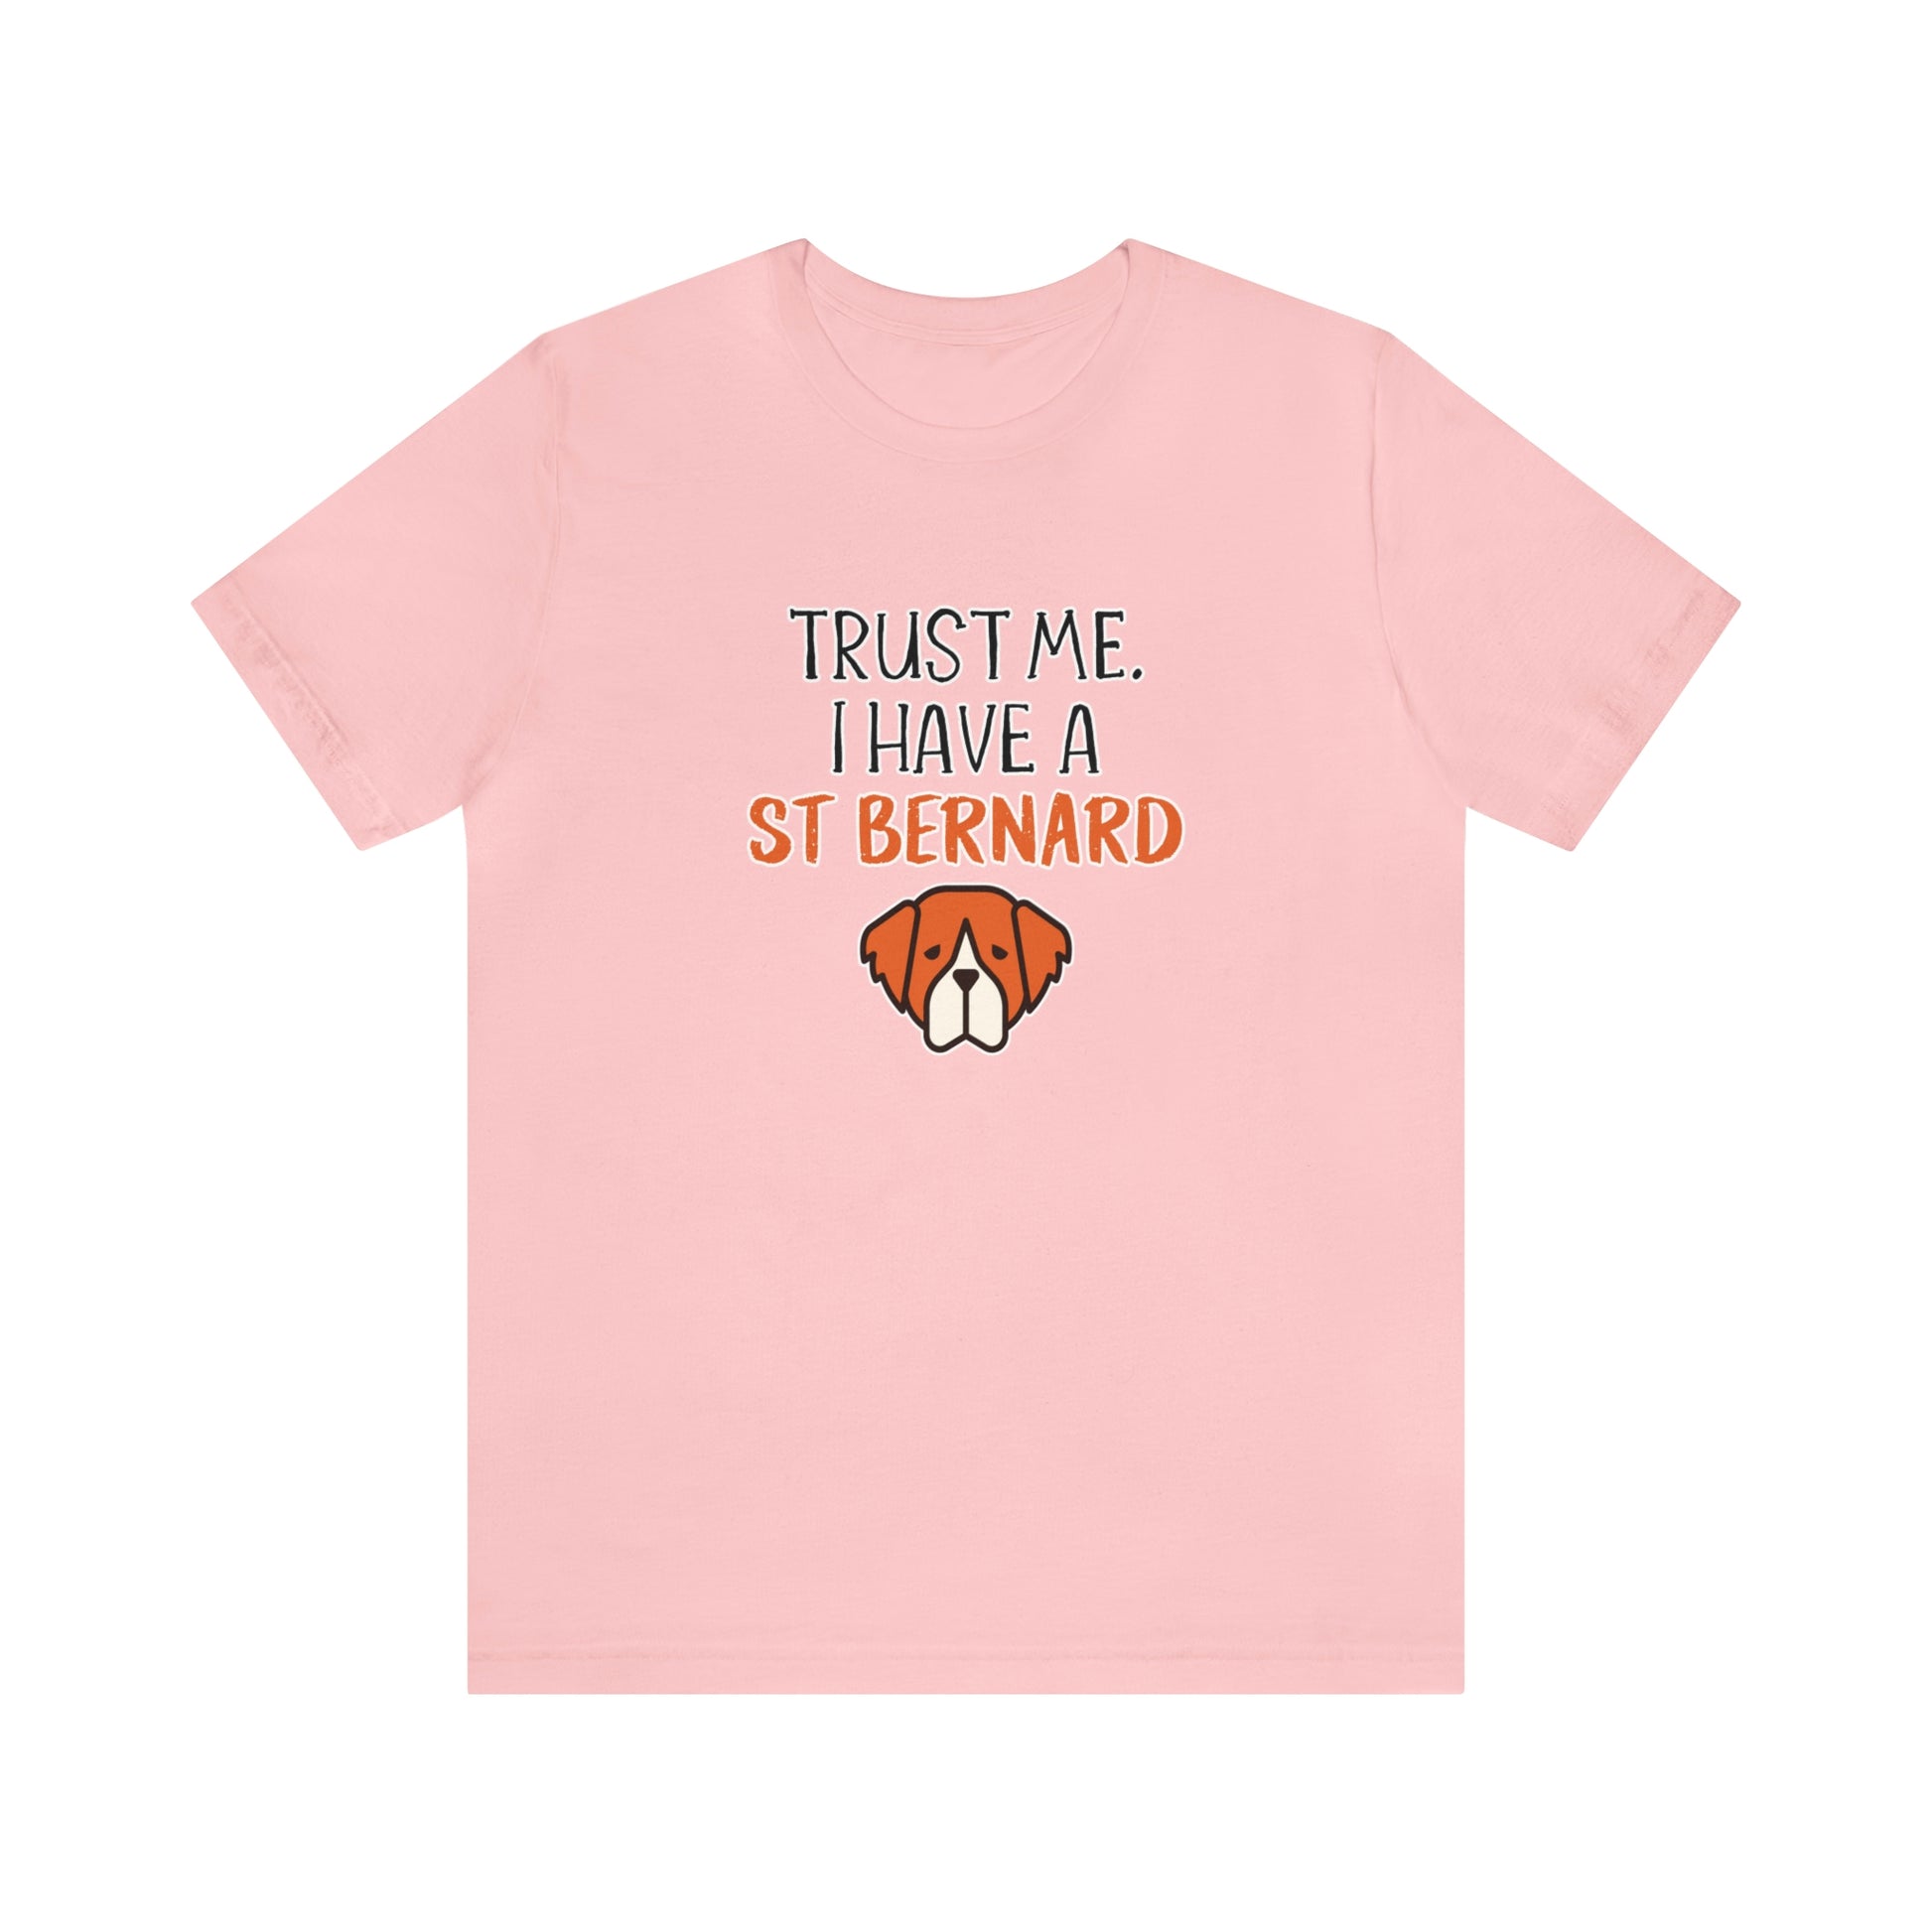 st bernard dog t shirt pink